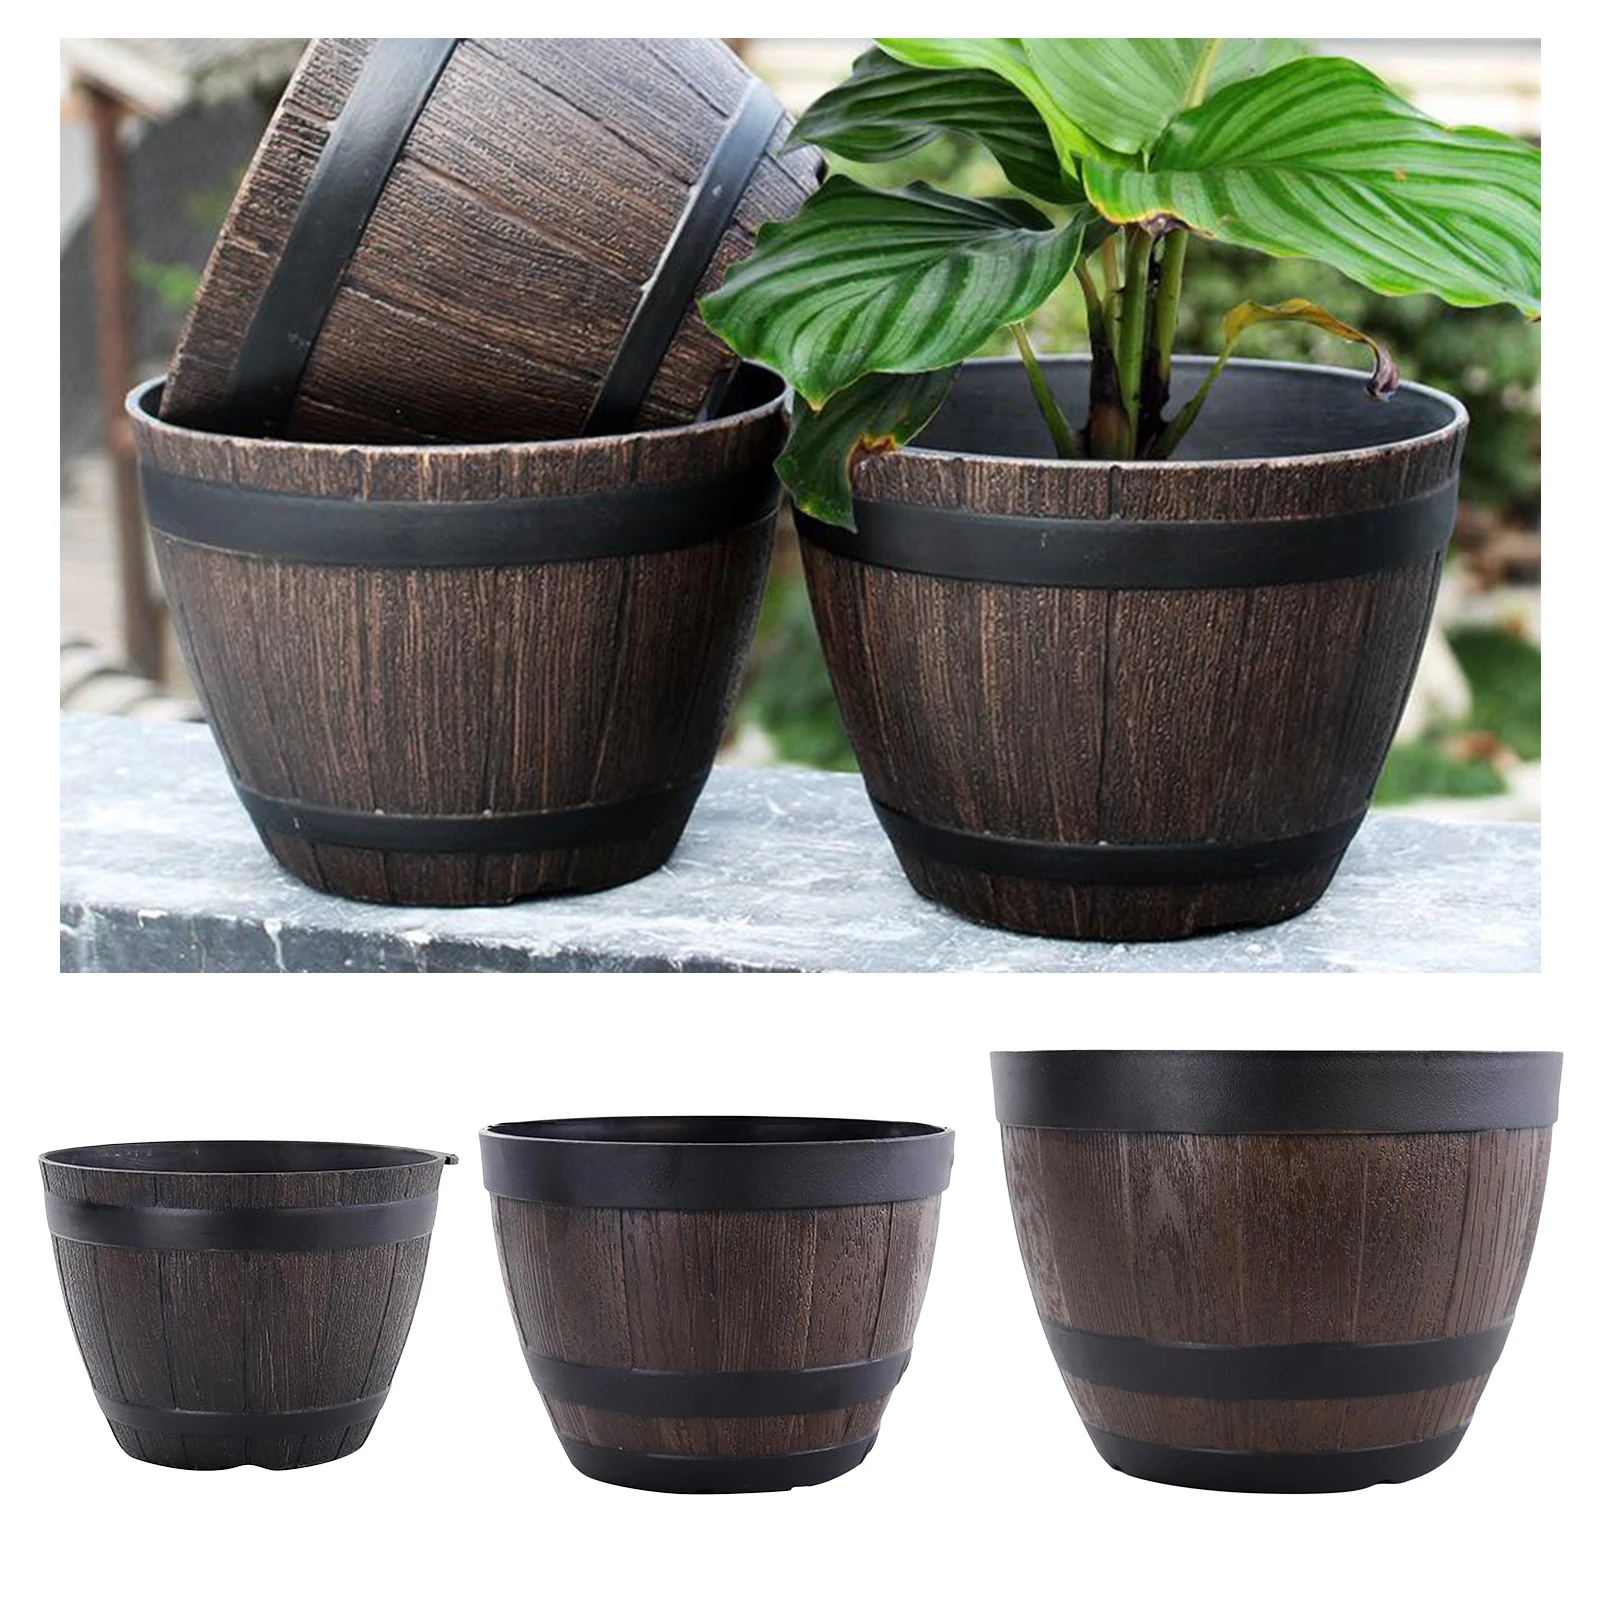 Rustic Barrel Resin Ornamental Flower Pot Flower Basket Plant Pots Planter For Home Garden Indoor Outdoor Decoration